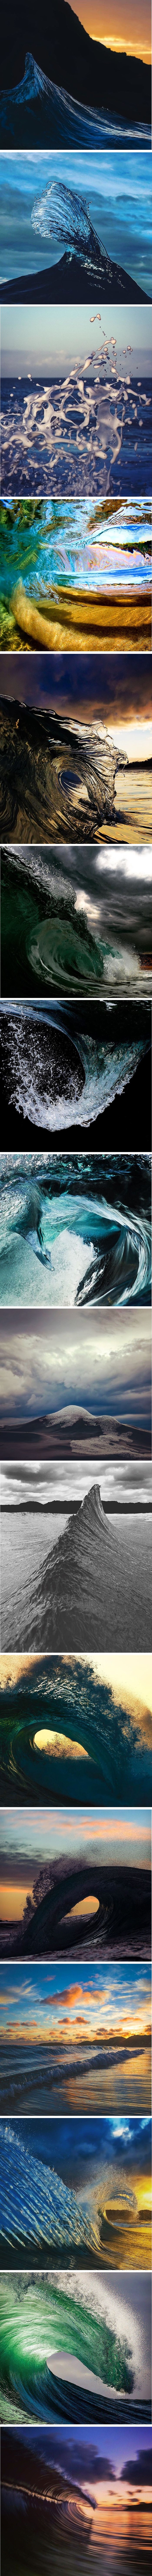 Moćne fotografije mora i valova zbog kojih ćete poželjeti da je ljeto 